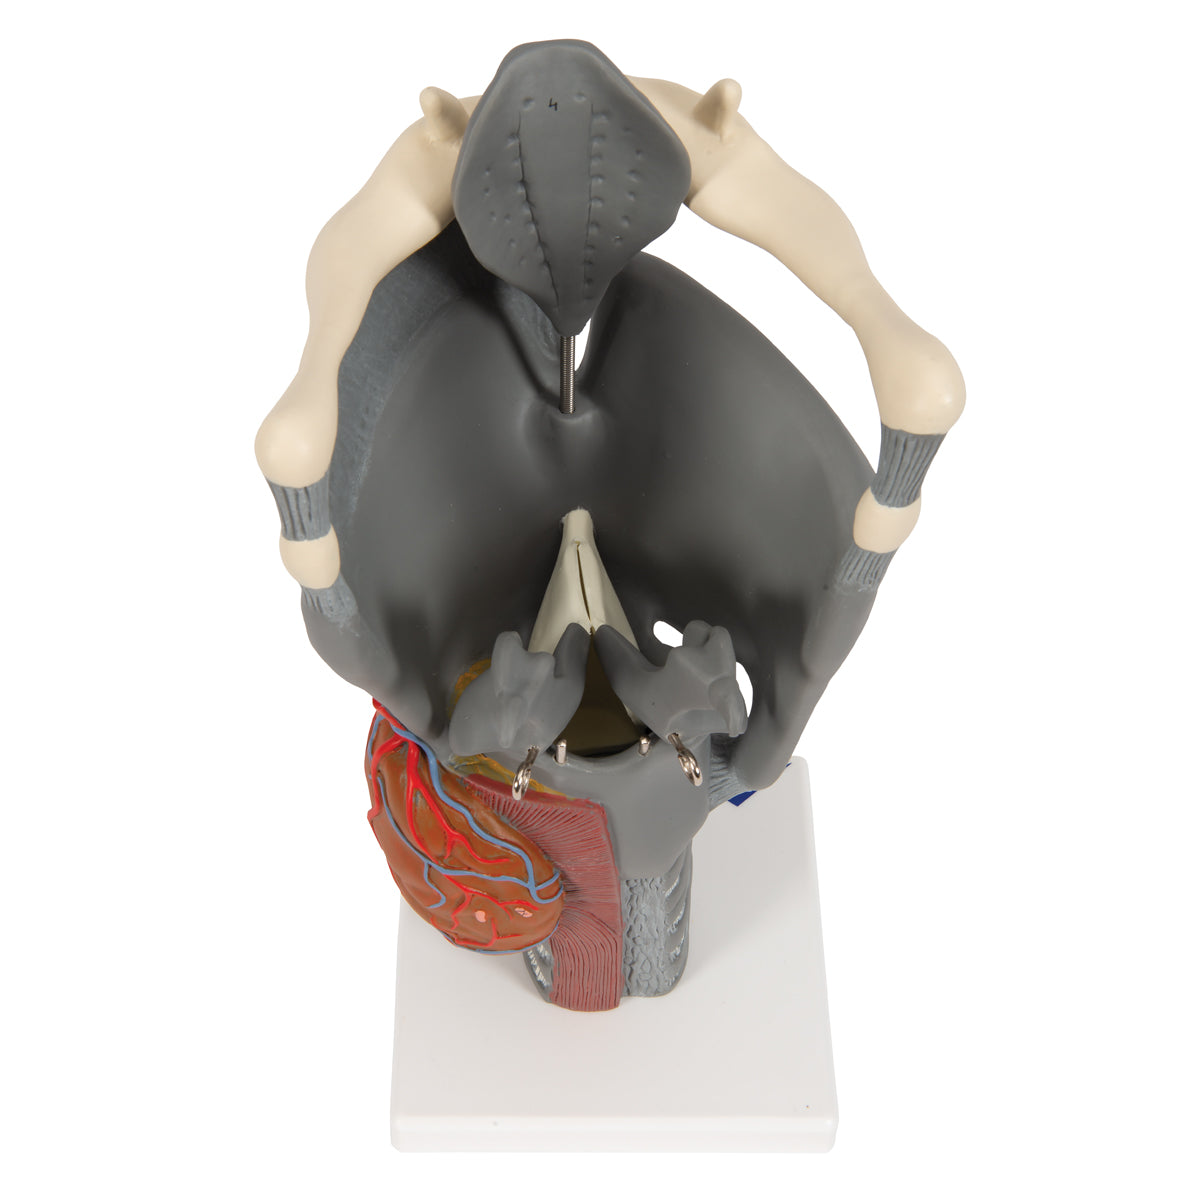 Modell av struphuvudet med rörliga näsbrosk och epiglottis